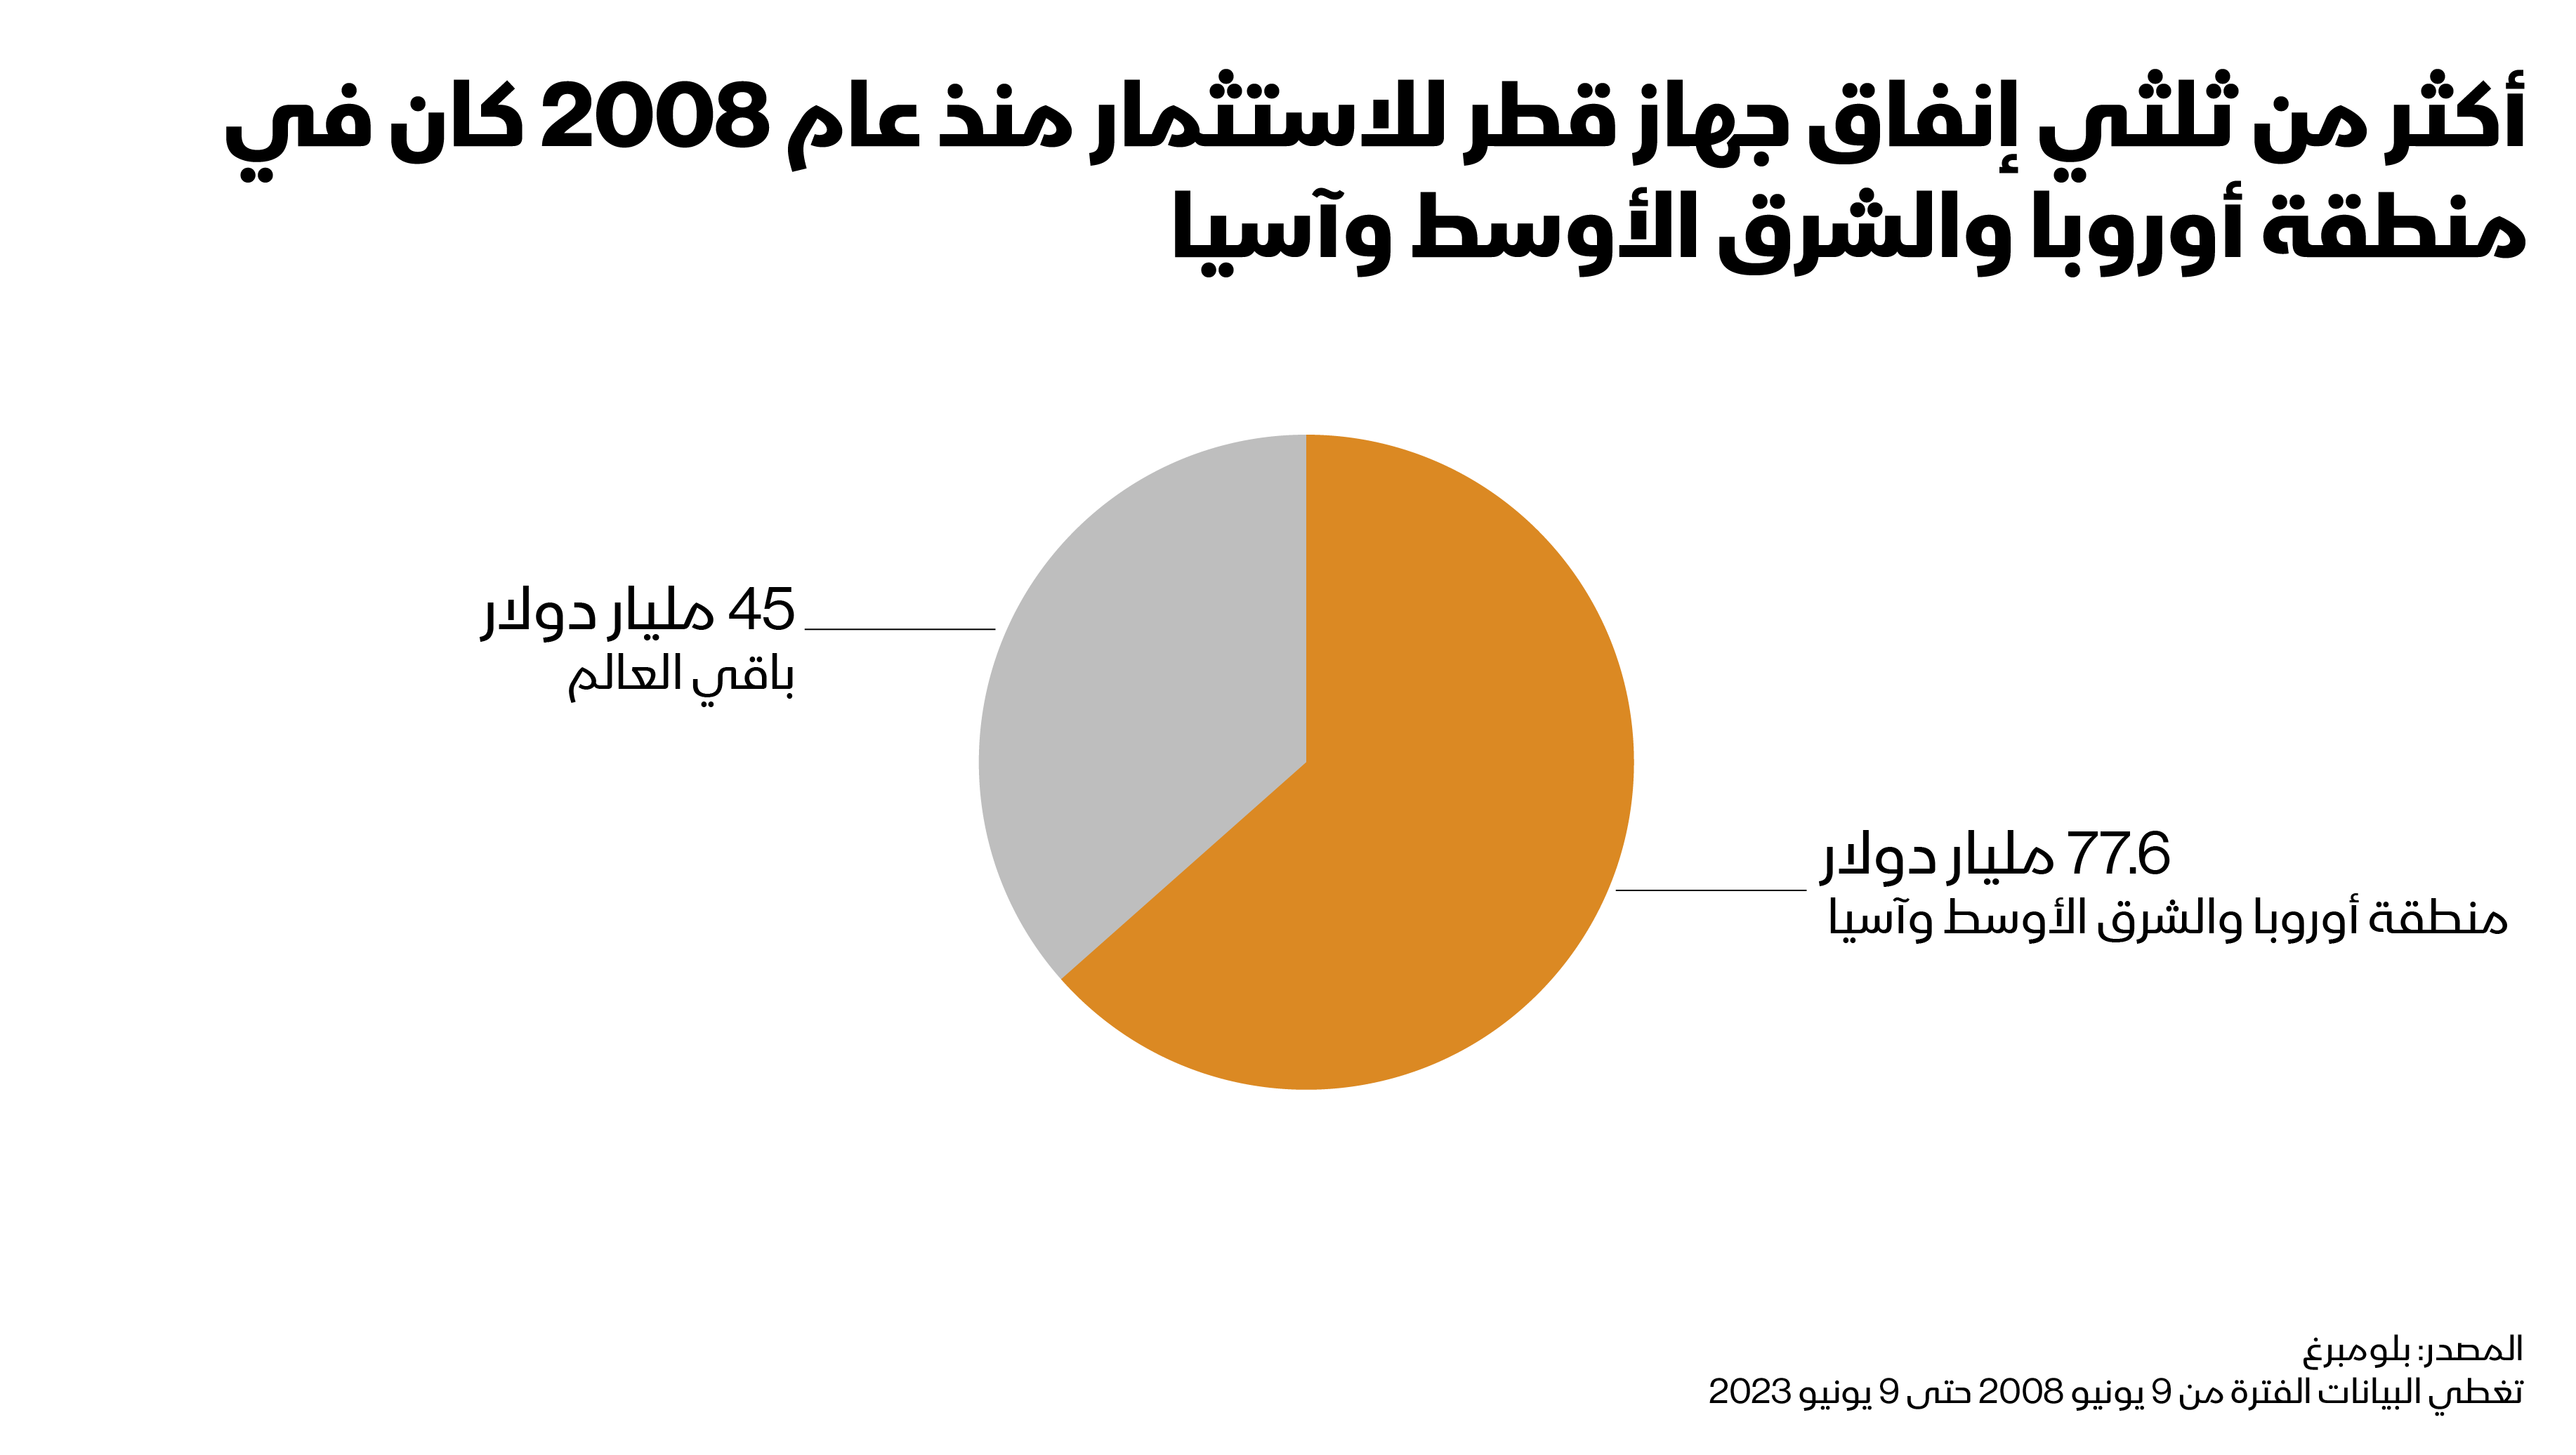 عزز جهاز قطر استثماراته الخارجية بسرعة على مدى الـ15 عاماً الأخيرة